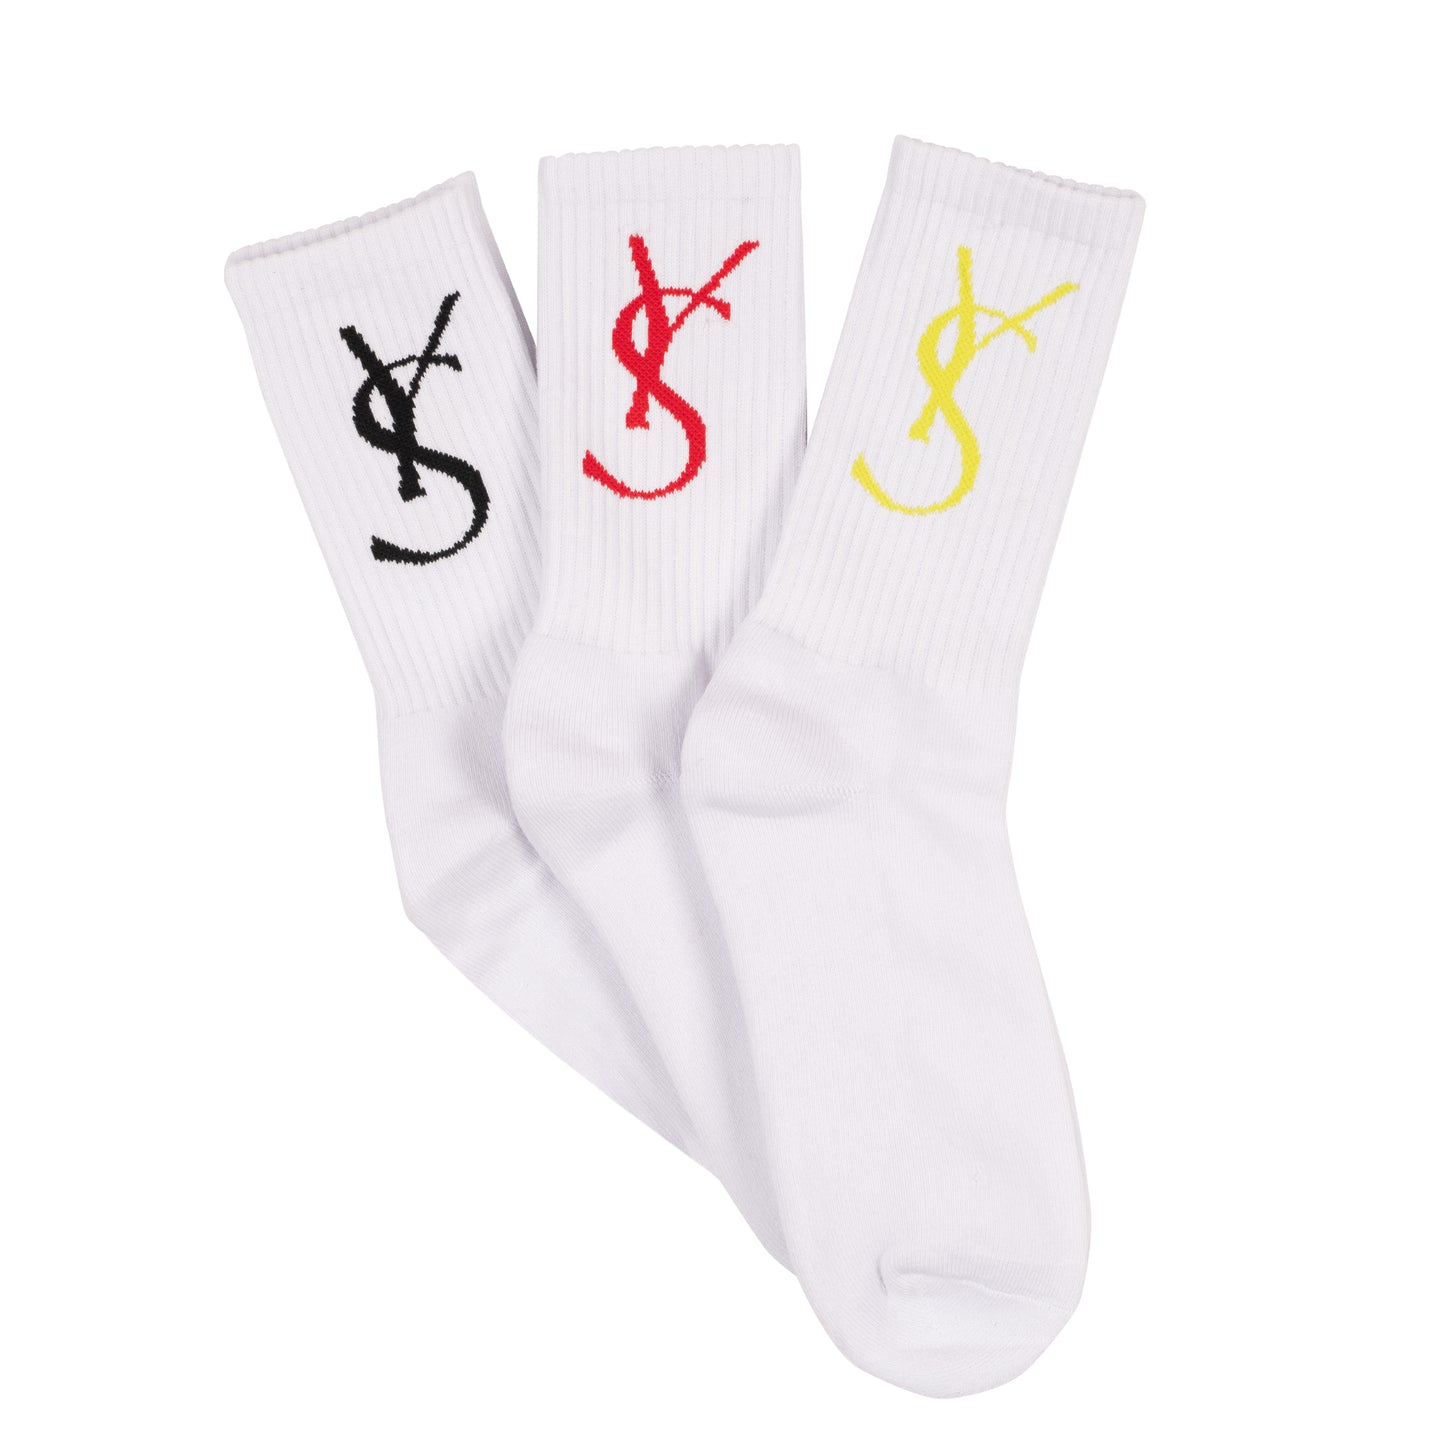 YS Socks 3 Pack (White)